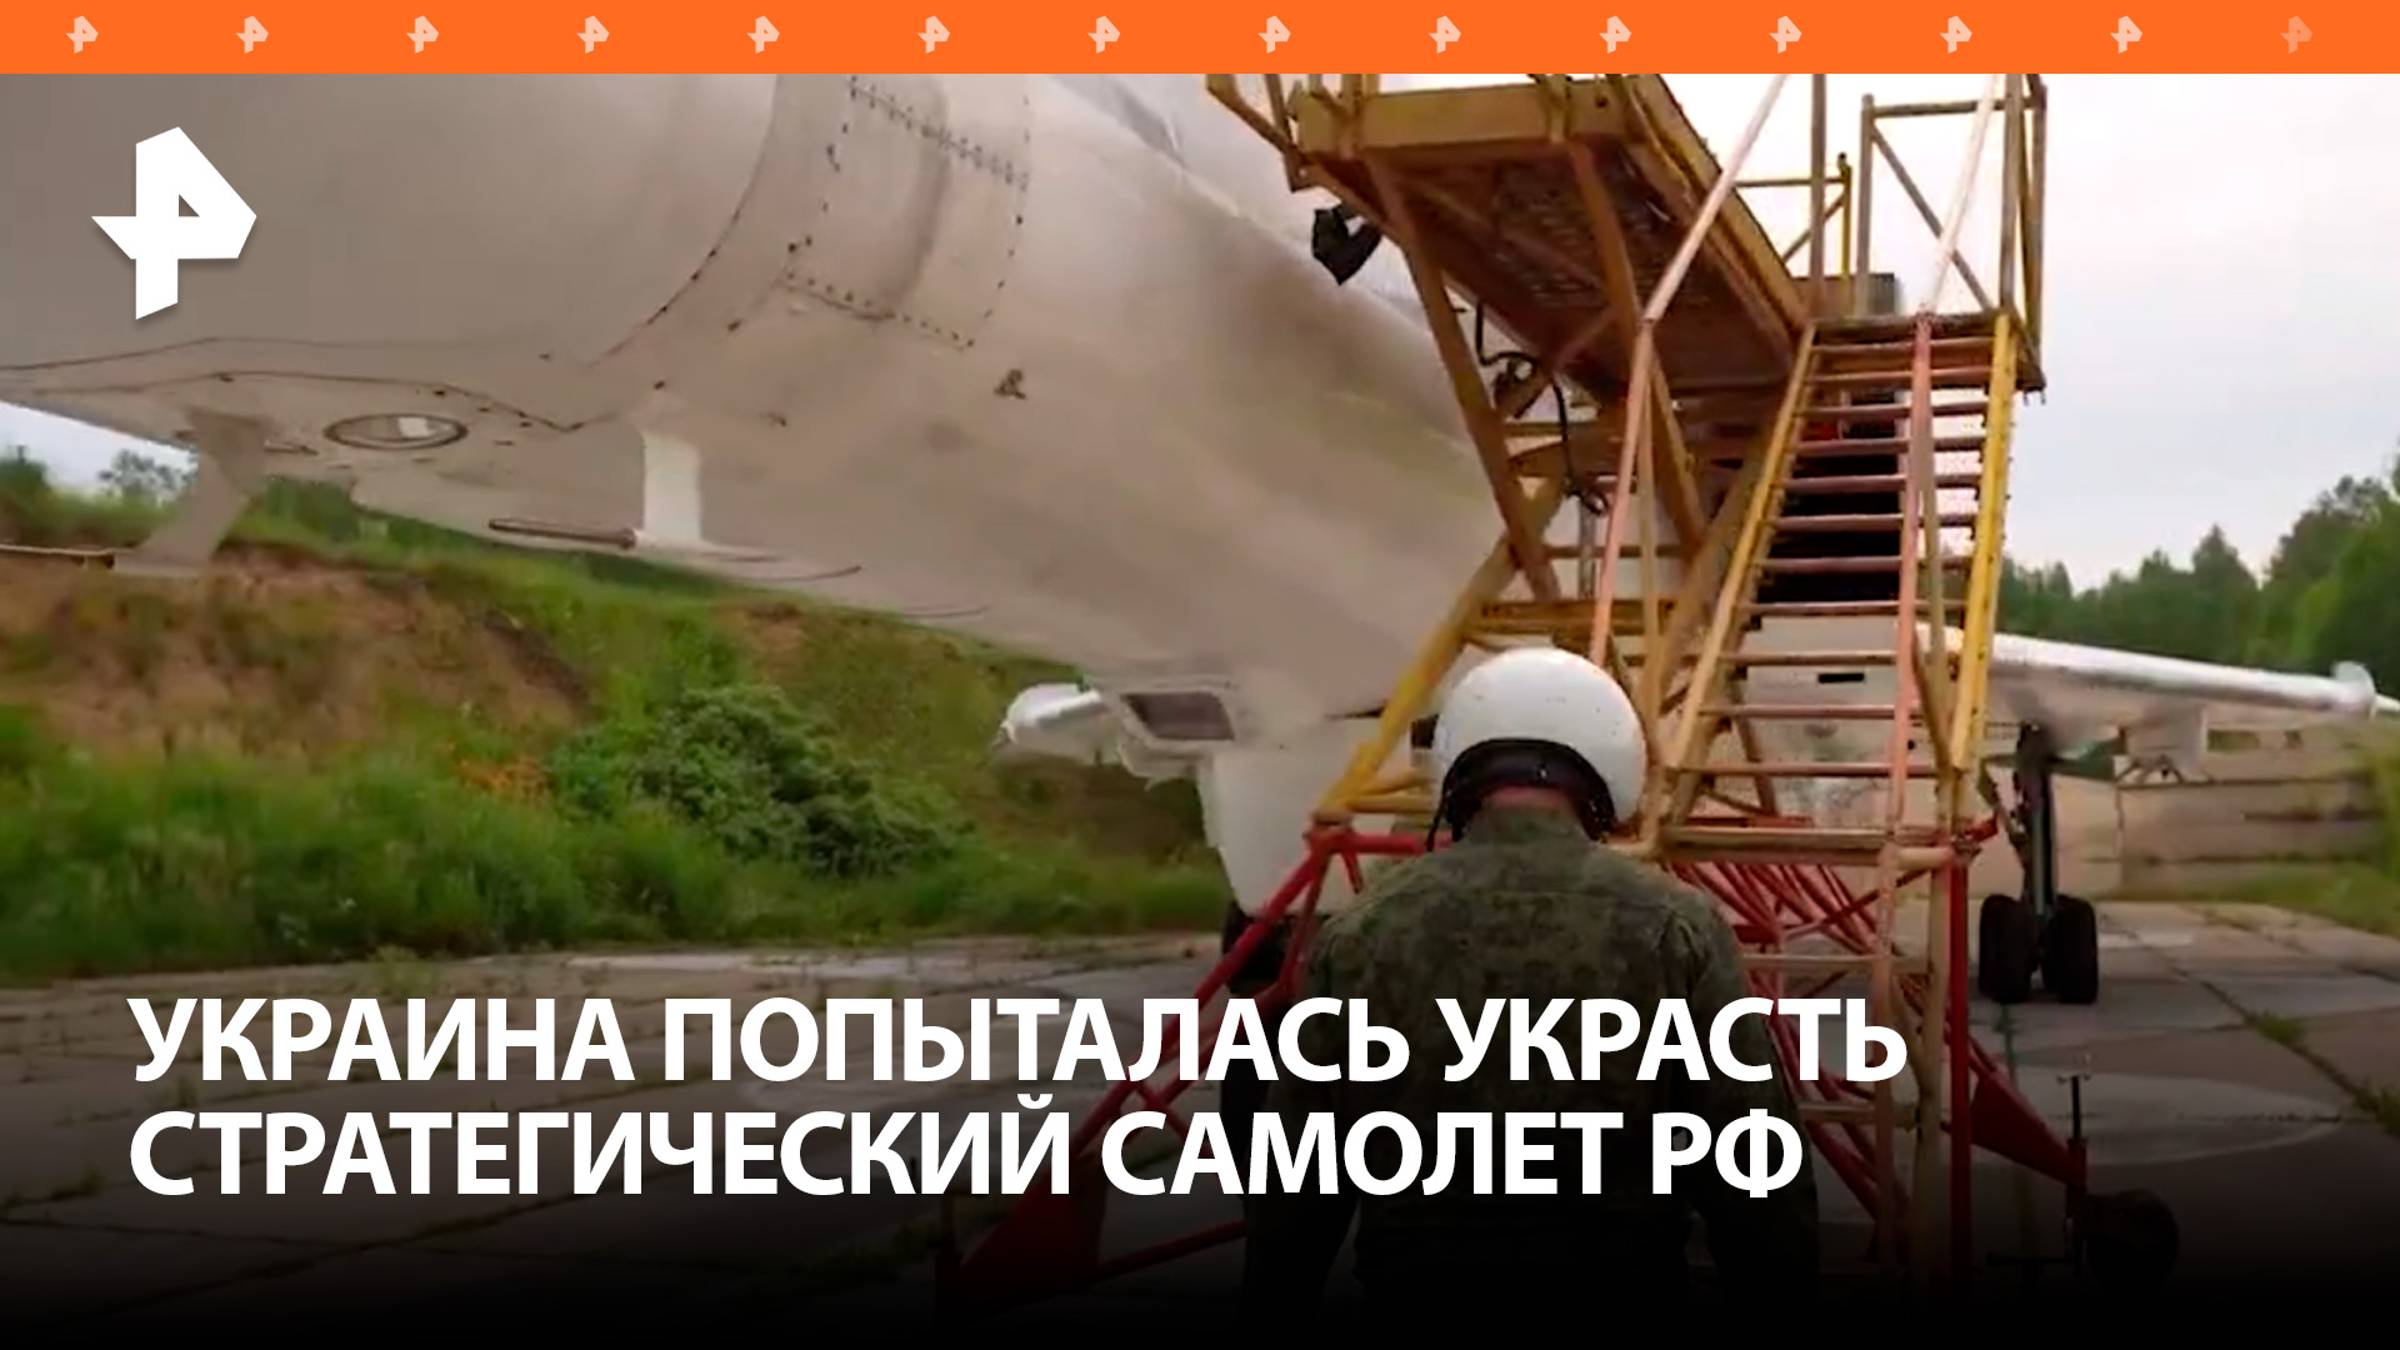 ФСБ пресекла попытку угона бомбардировщика Ту-22М3 на Украину - причастны спецслужбы НАТО